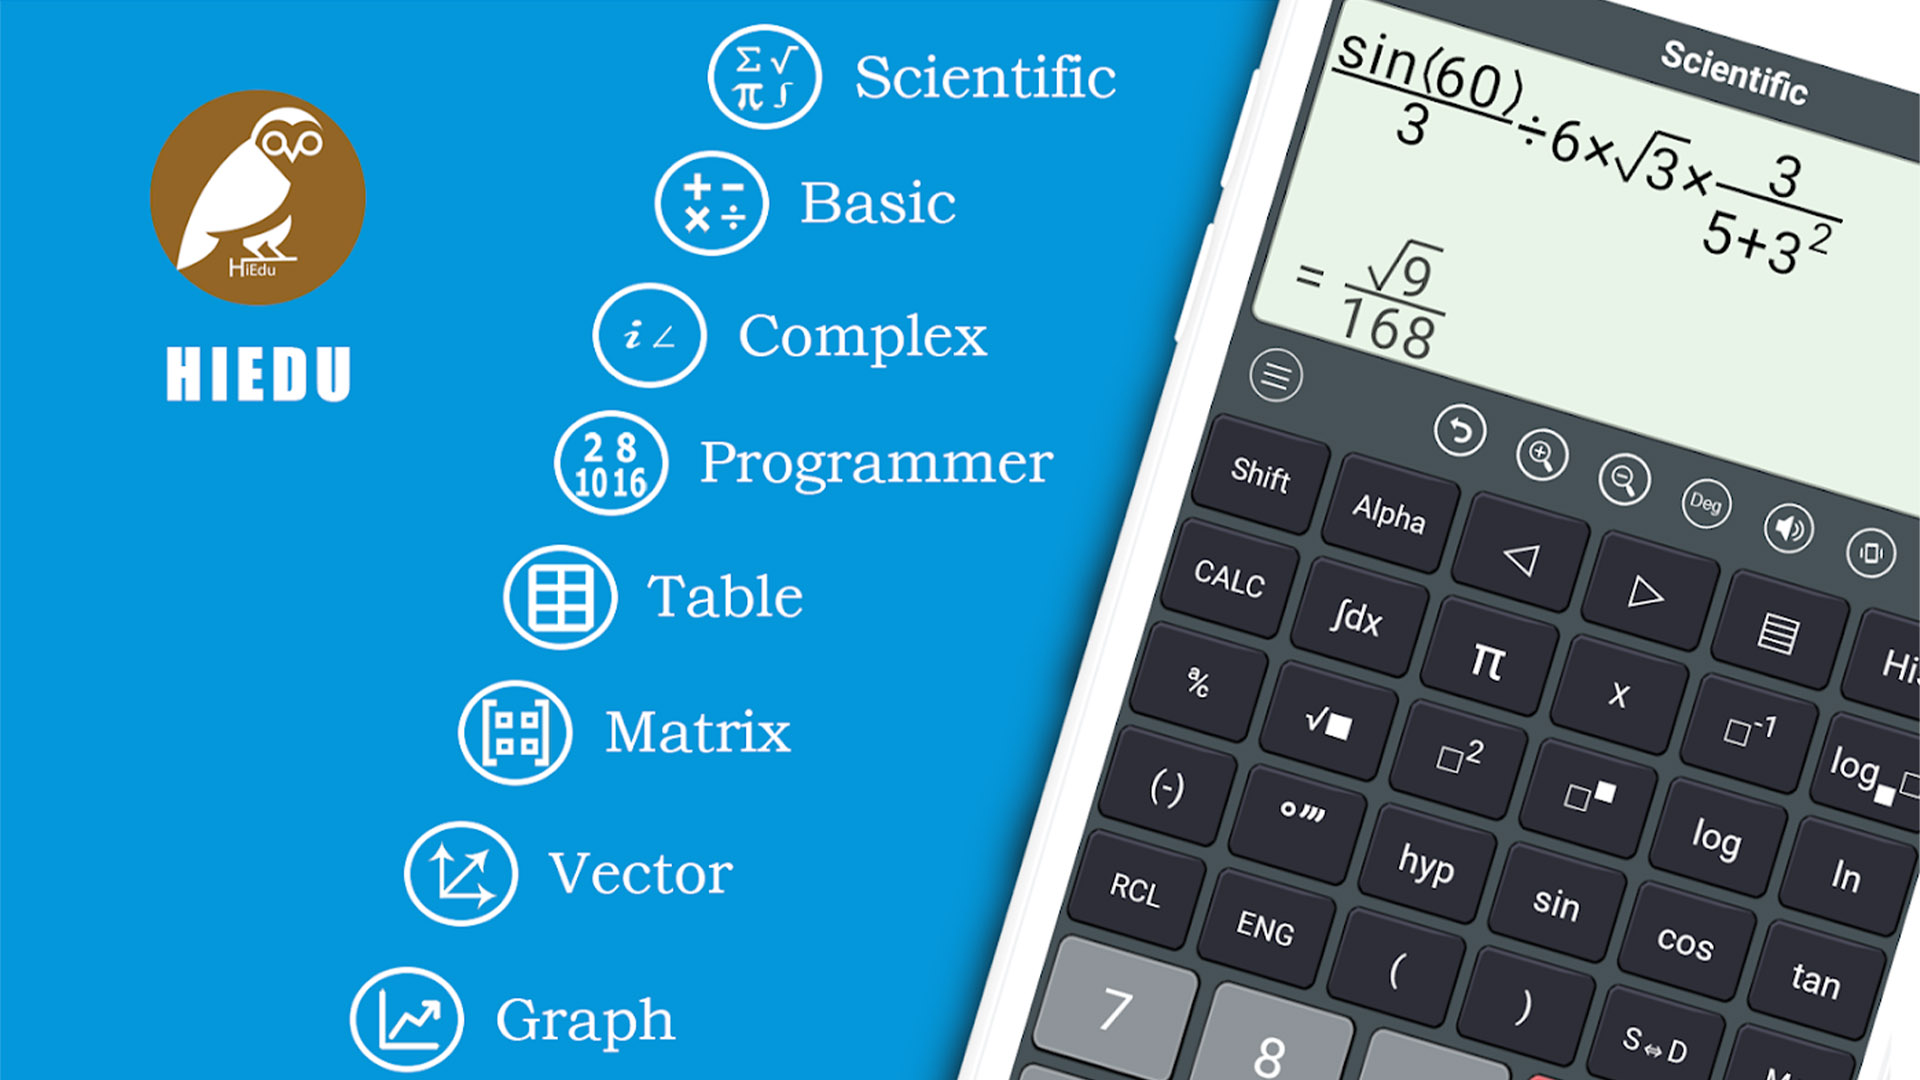 HiEdu Scientific Calculator screenshot 2020